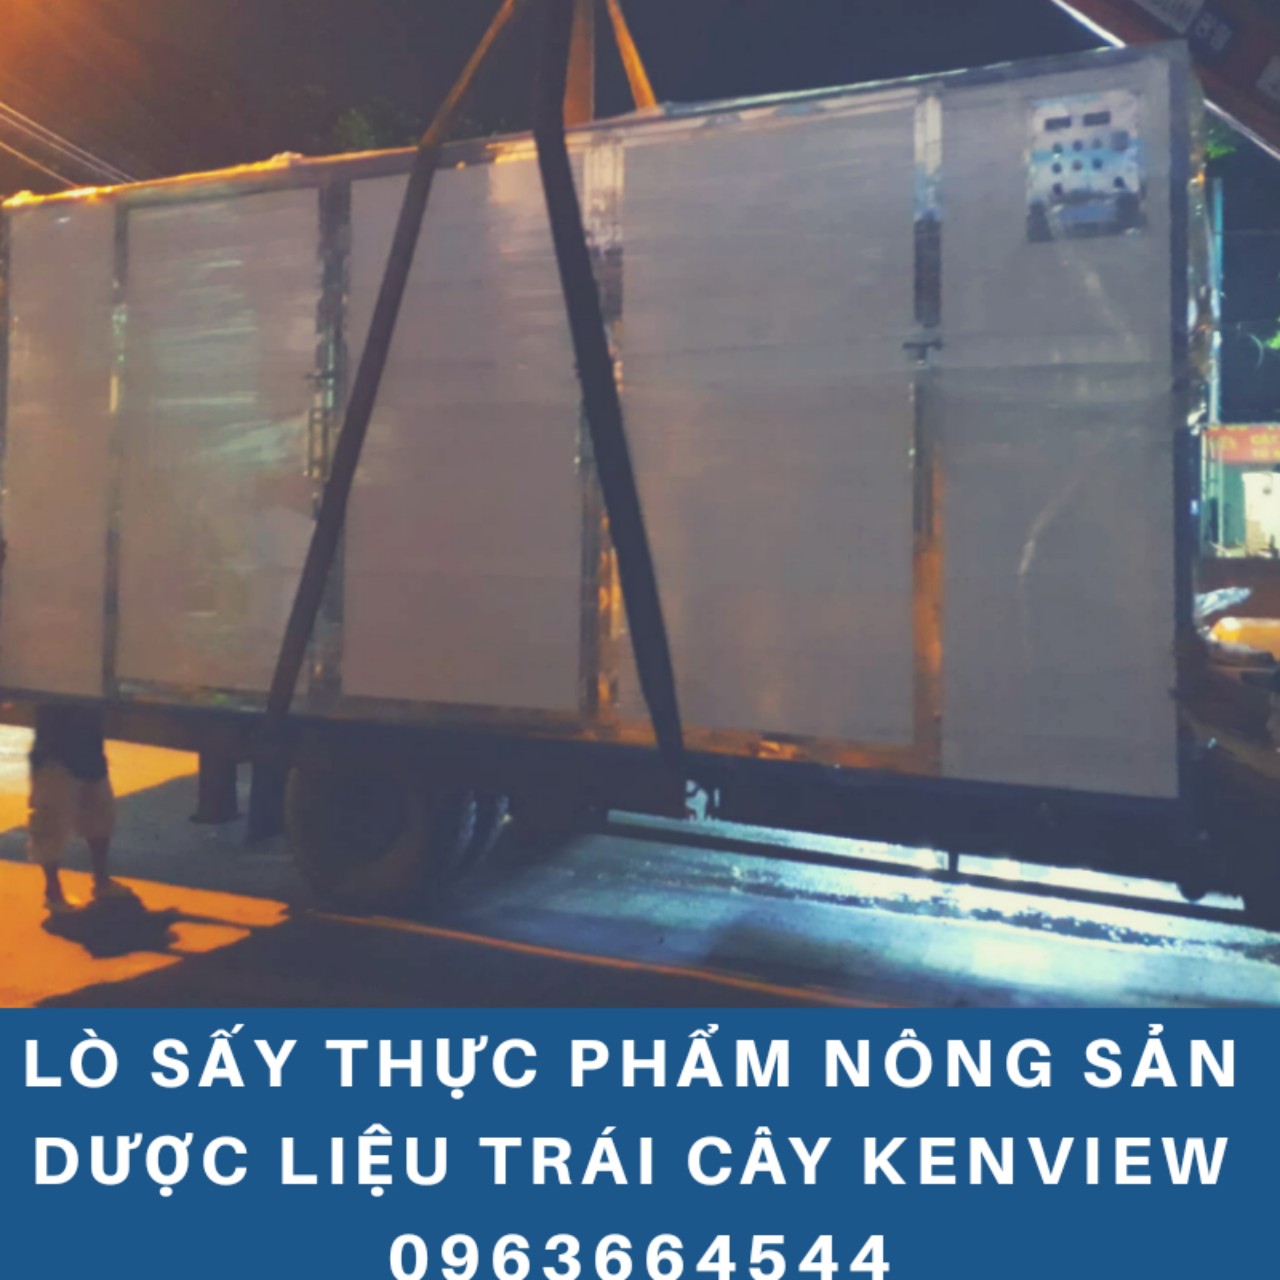 Kenview cung cấp máy sấy khô gà, khô heo, khô bò ở Hà Nội